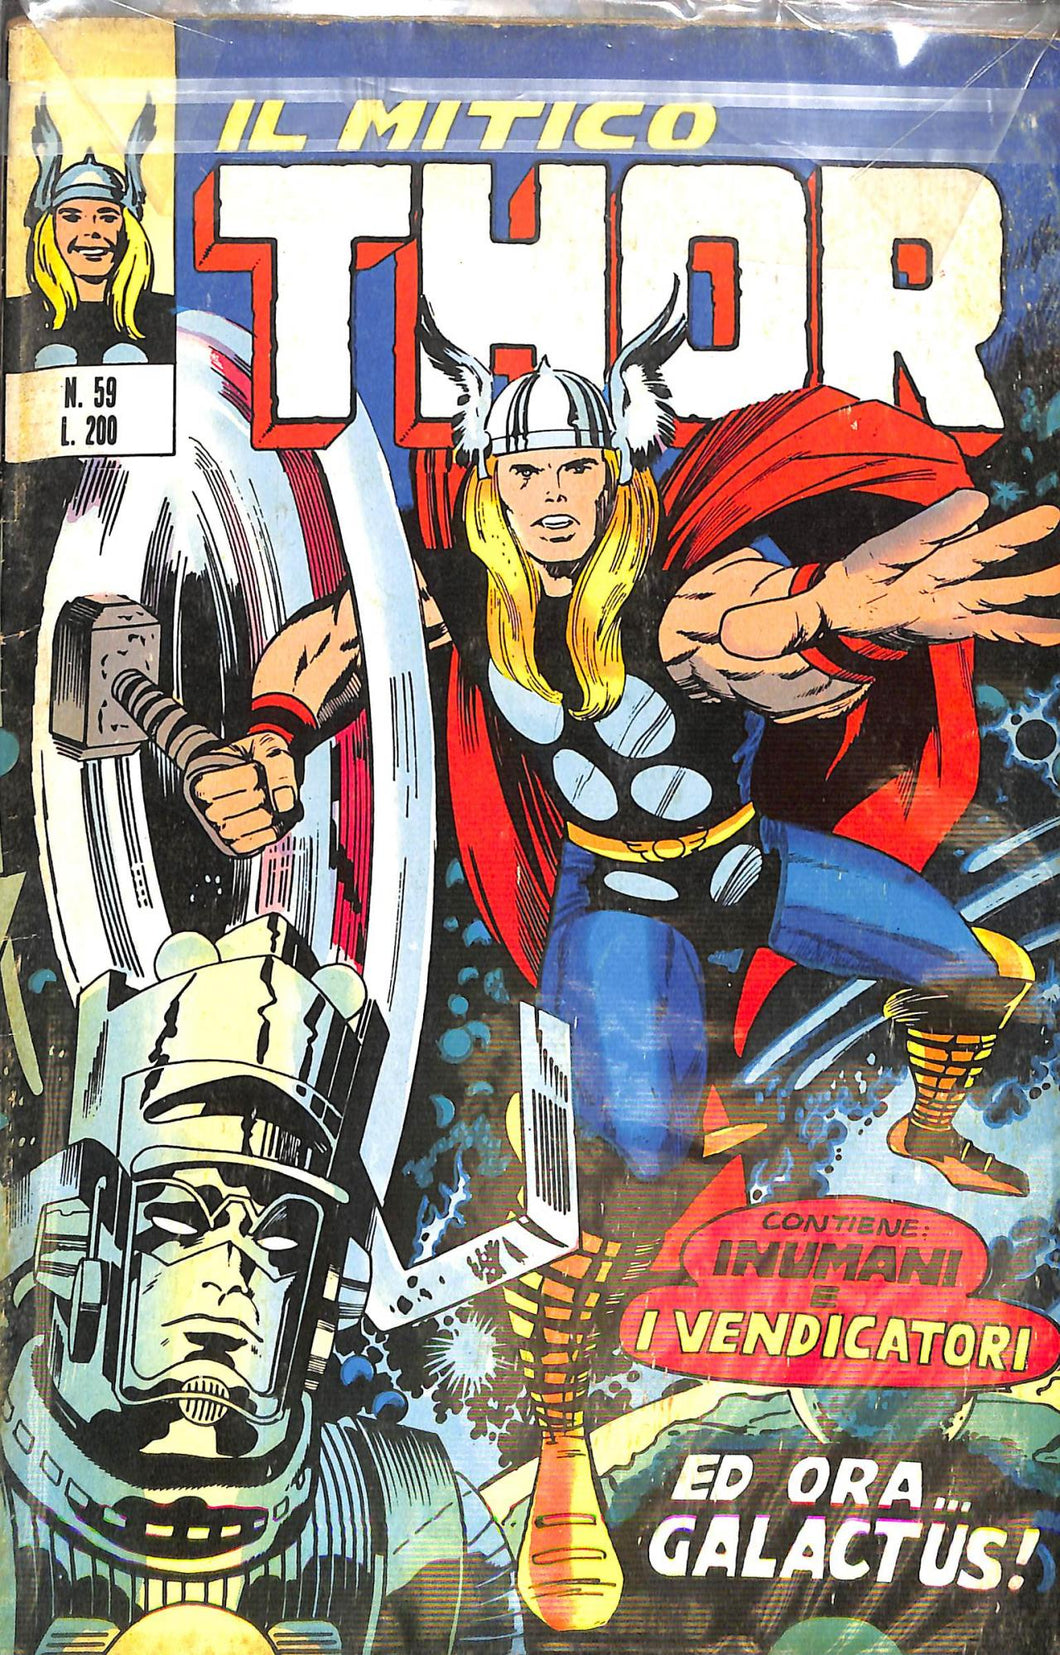 Fumetto - Fumetto - Il mitico Thor Nr 59 Corno Editore